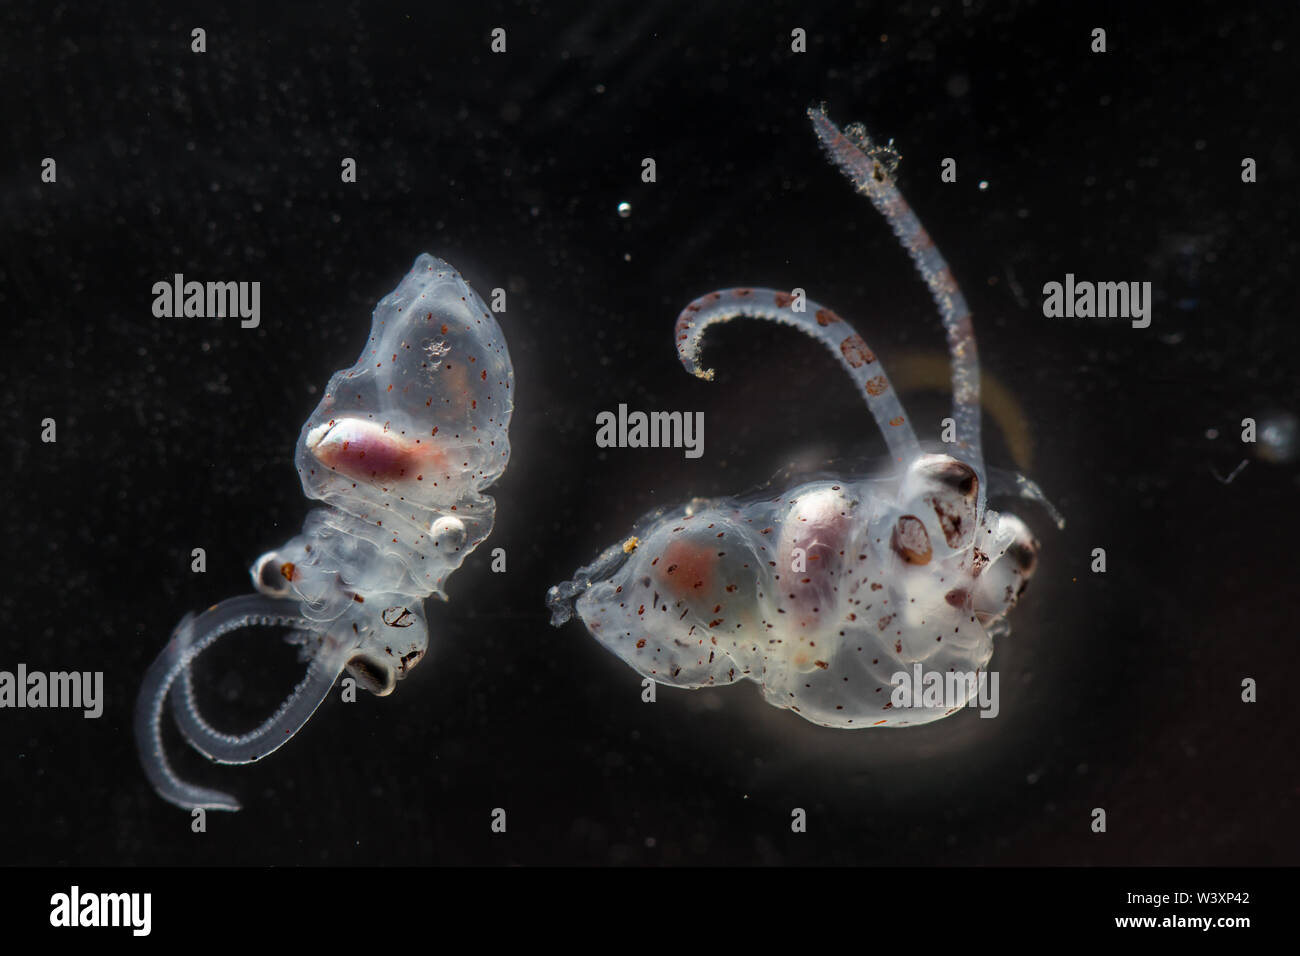 Zwei Larven squid wurden in einer Stichprobe von meeresbiologen an Bord die ozeanographische Forschung Kreuzfahrt in den Südatlantik sammelte gefunden. Stockfoto